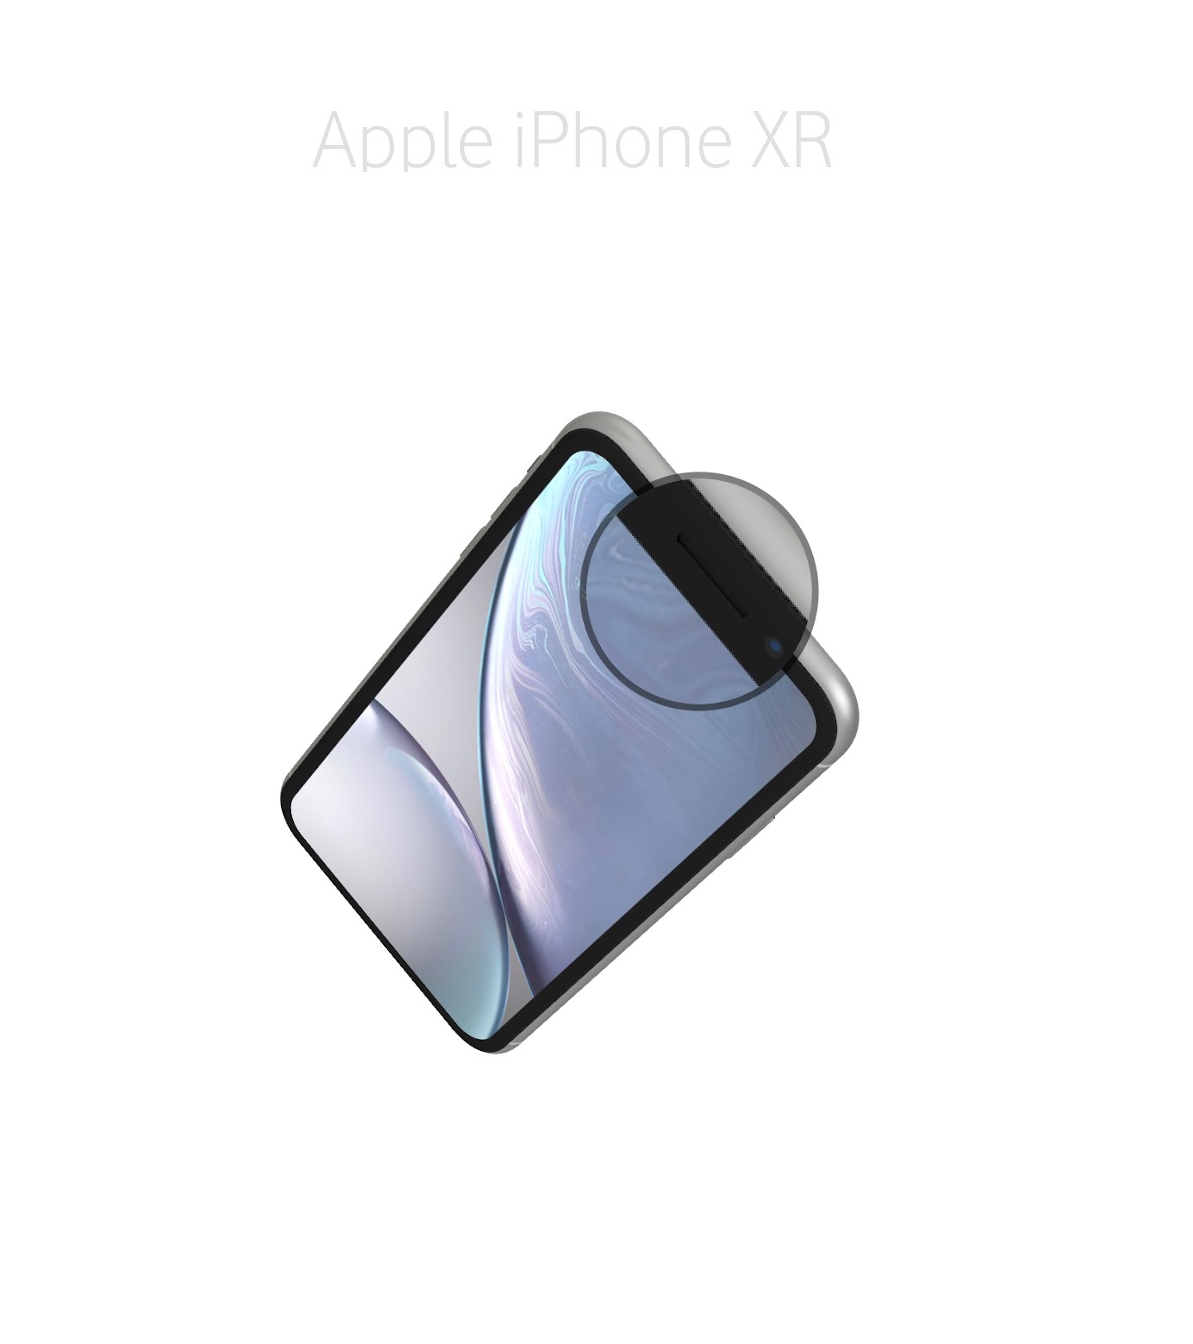 Laga ljussensor (proximity) iPhone XR